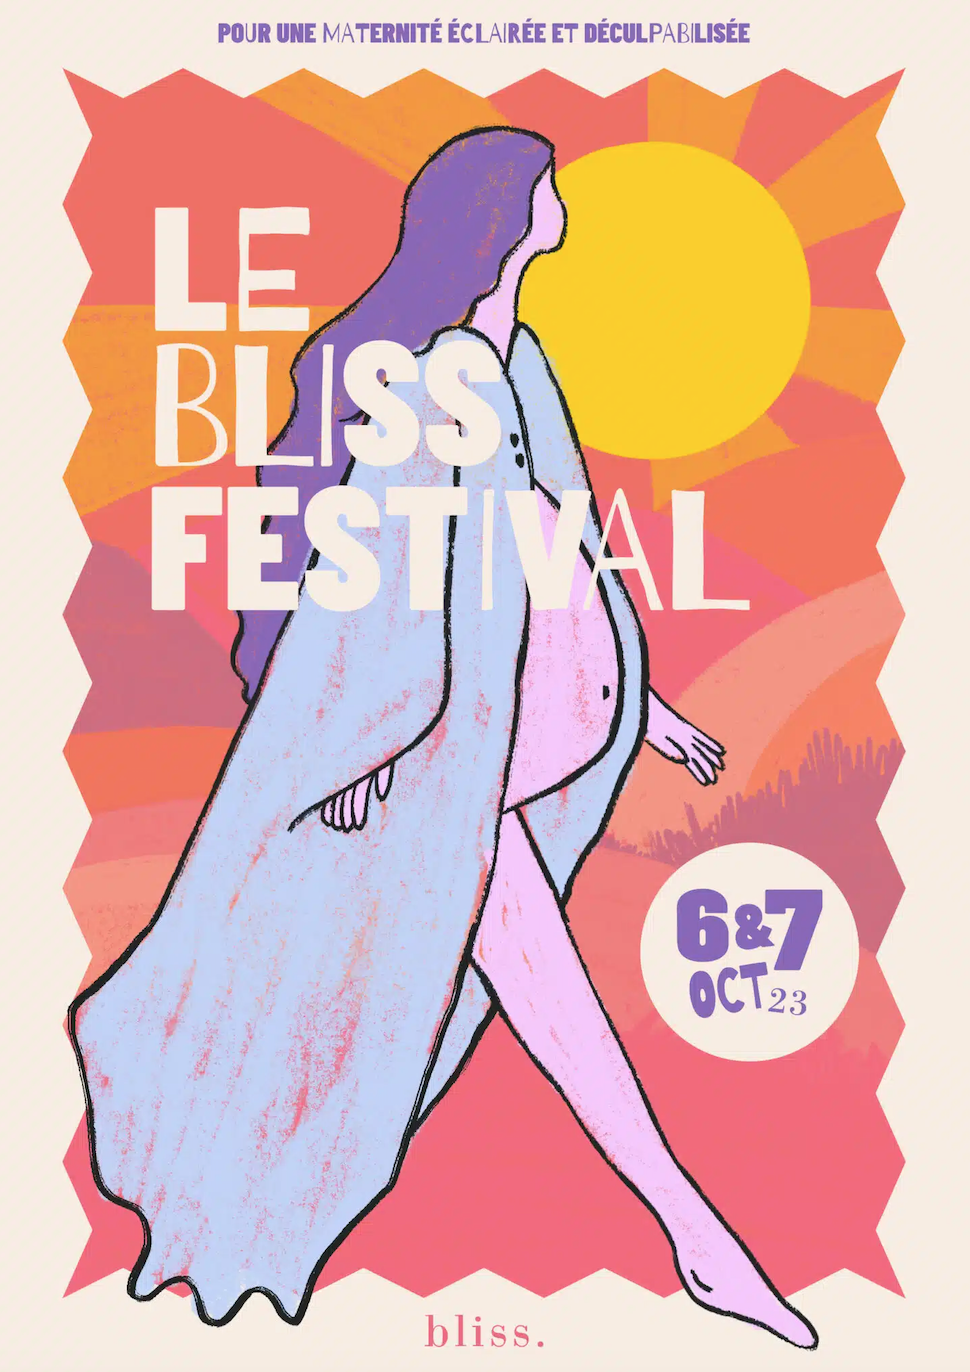 La première édition du Bliss Festival arrive en octobre